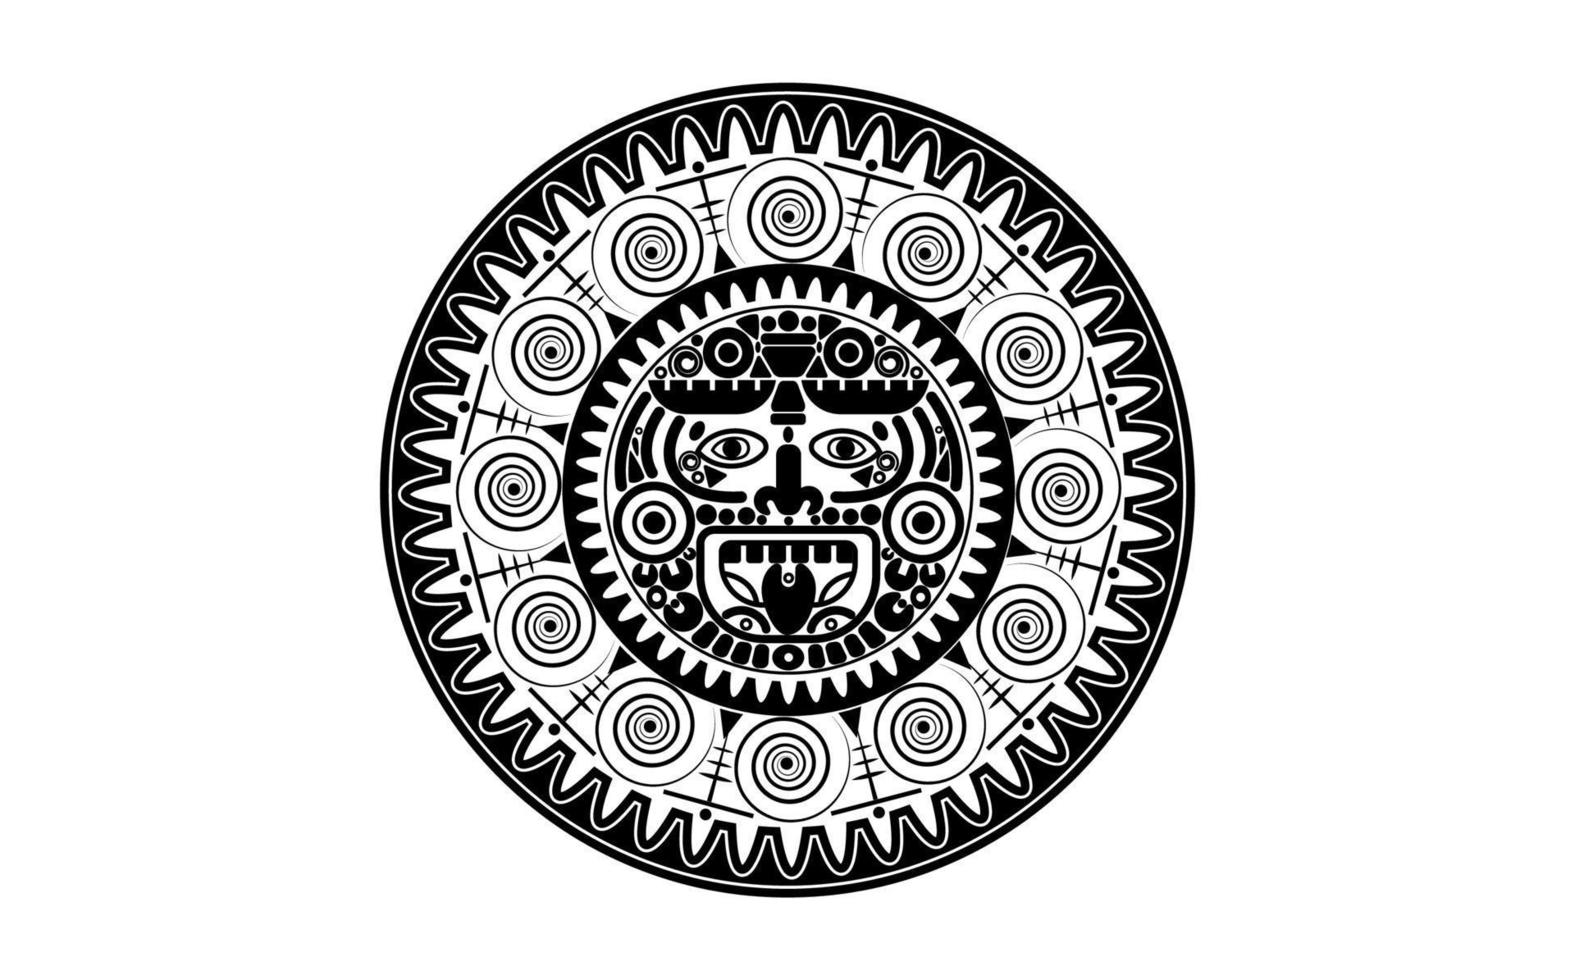 Sacred Mayan sun god, Aztec wheel calendar, Maya symbols ethnic mask, black tattoo round frame border old logo icon vector illustration isolated on white background